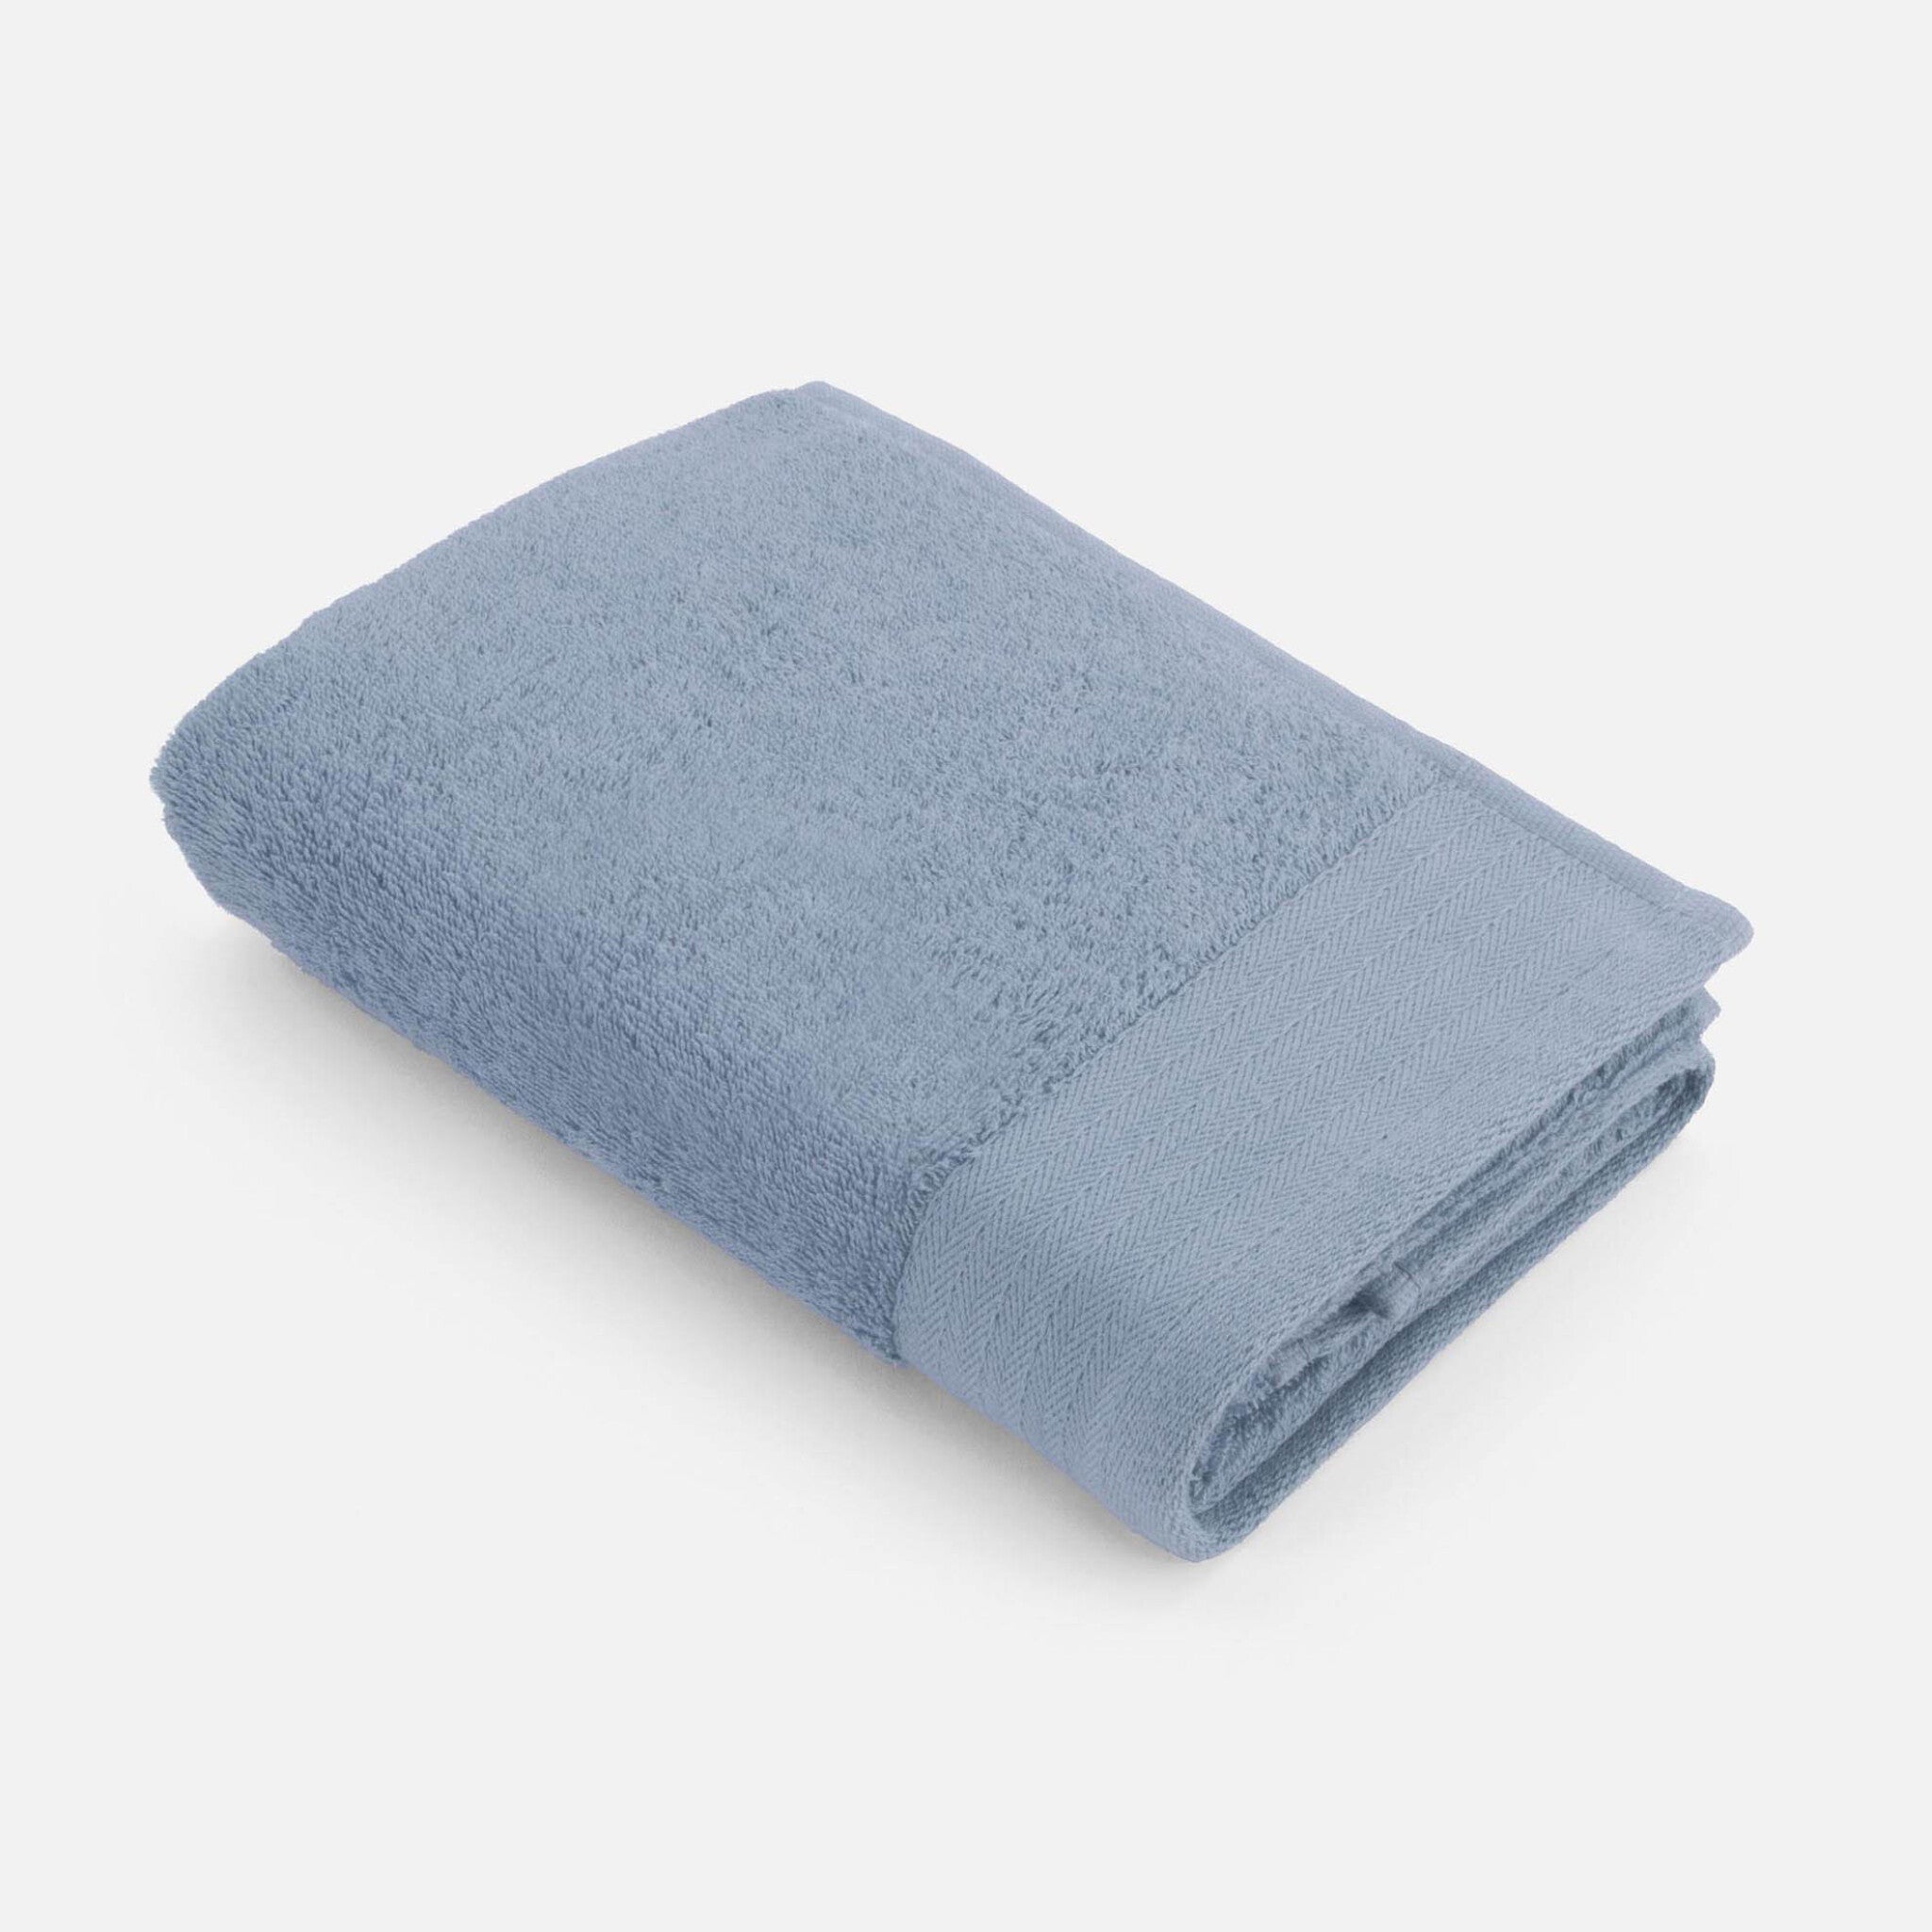 Walra Handdoek Soft Cotton 50x100 - Blauw -  550 gr/m² aanbieding